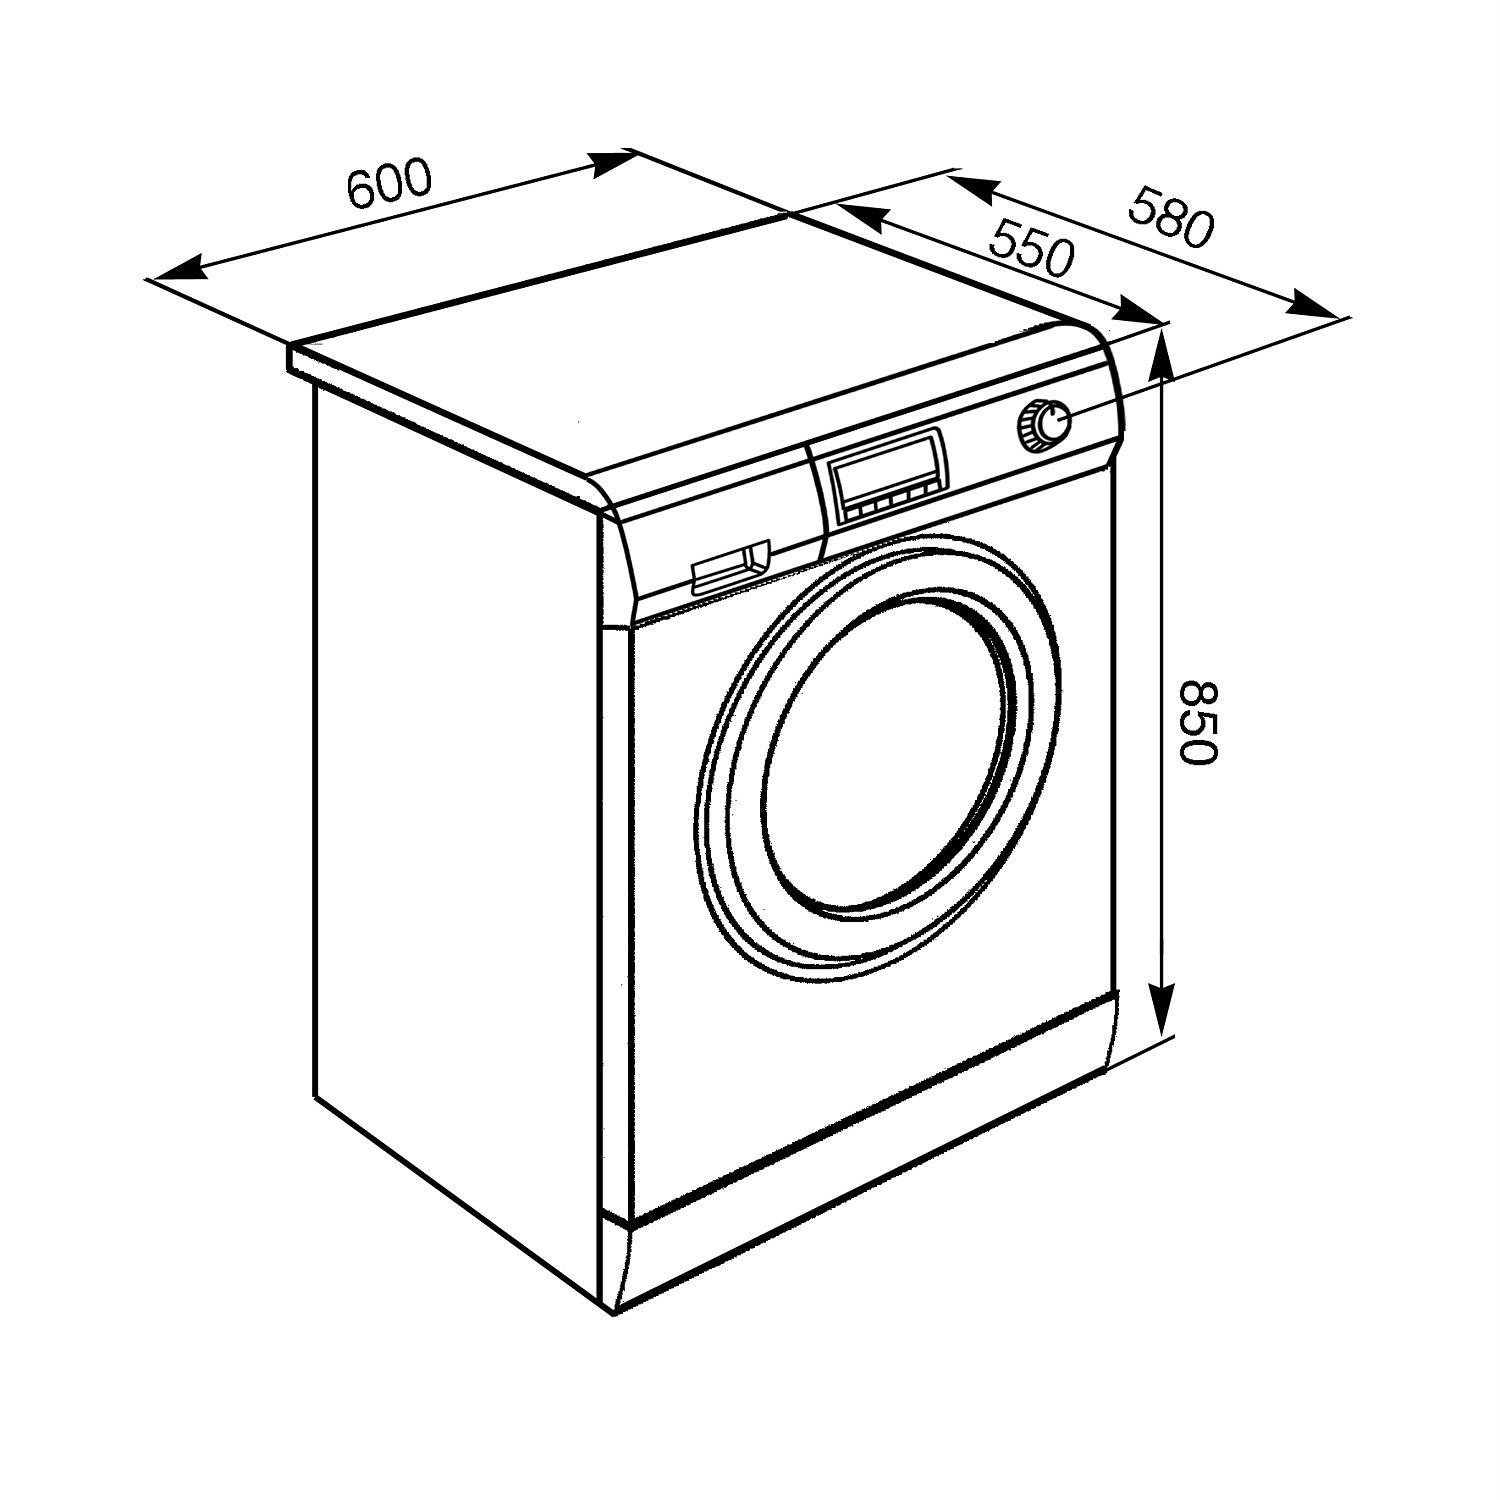 SMEG LSF147E Отдельностоящая стиральная машина с сушкой, 60 см, цвет белый.